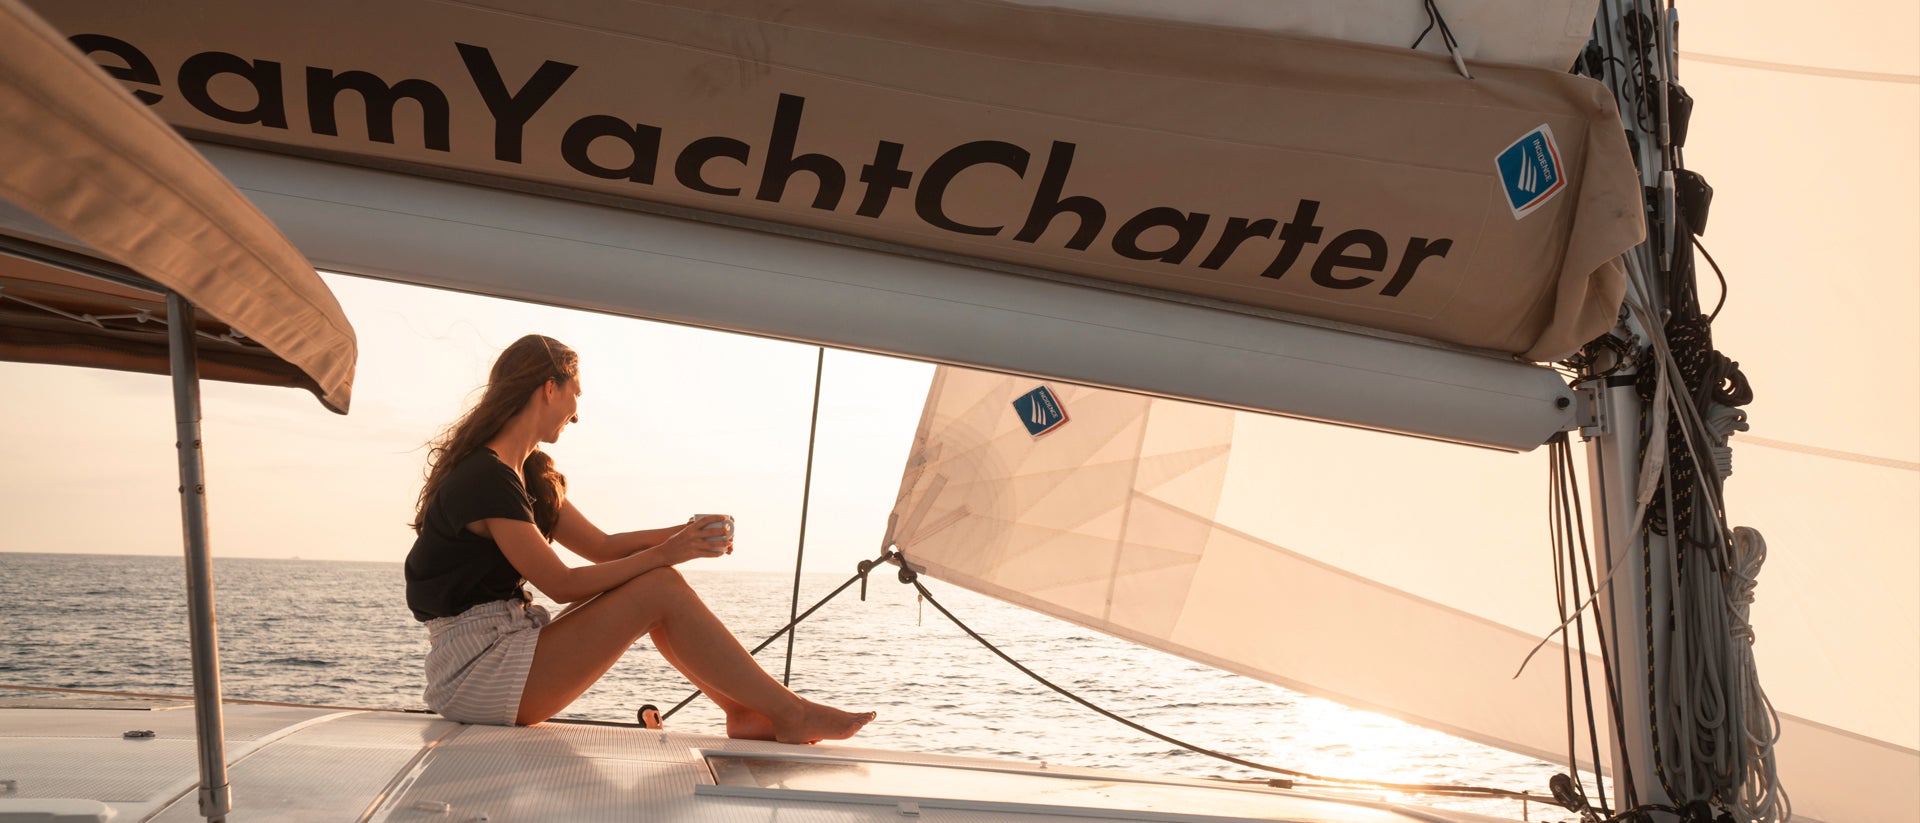 Bretagne glad flicka båtcharter solnedgång